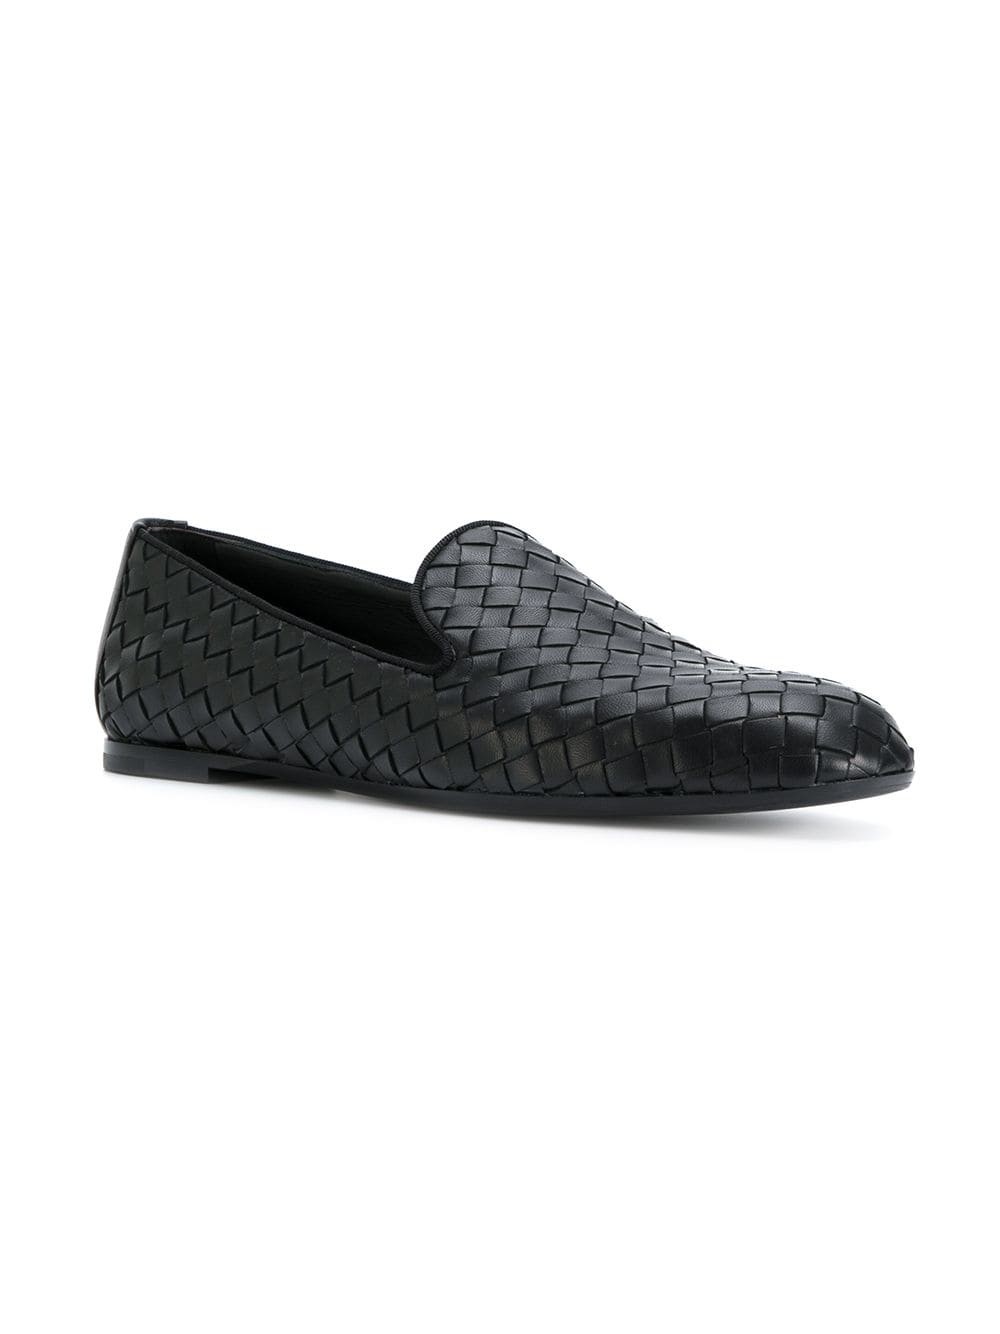 Bottega Veneta Men's Drivers Shoes Black Size 41 (8 US) 474977 VJE01 1000